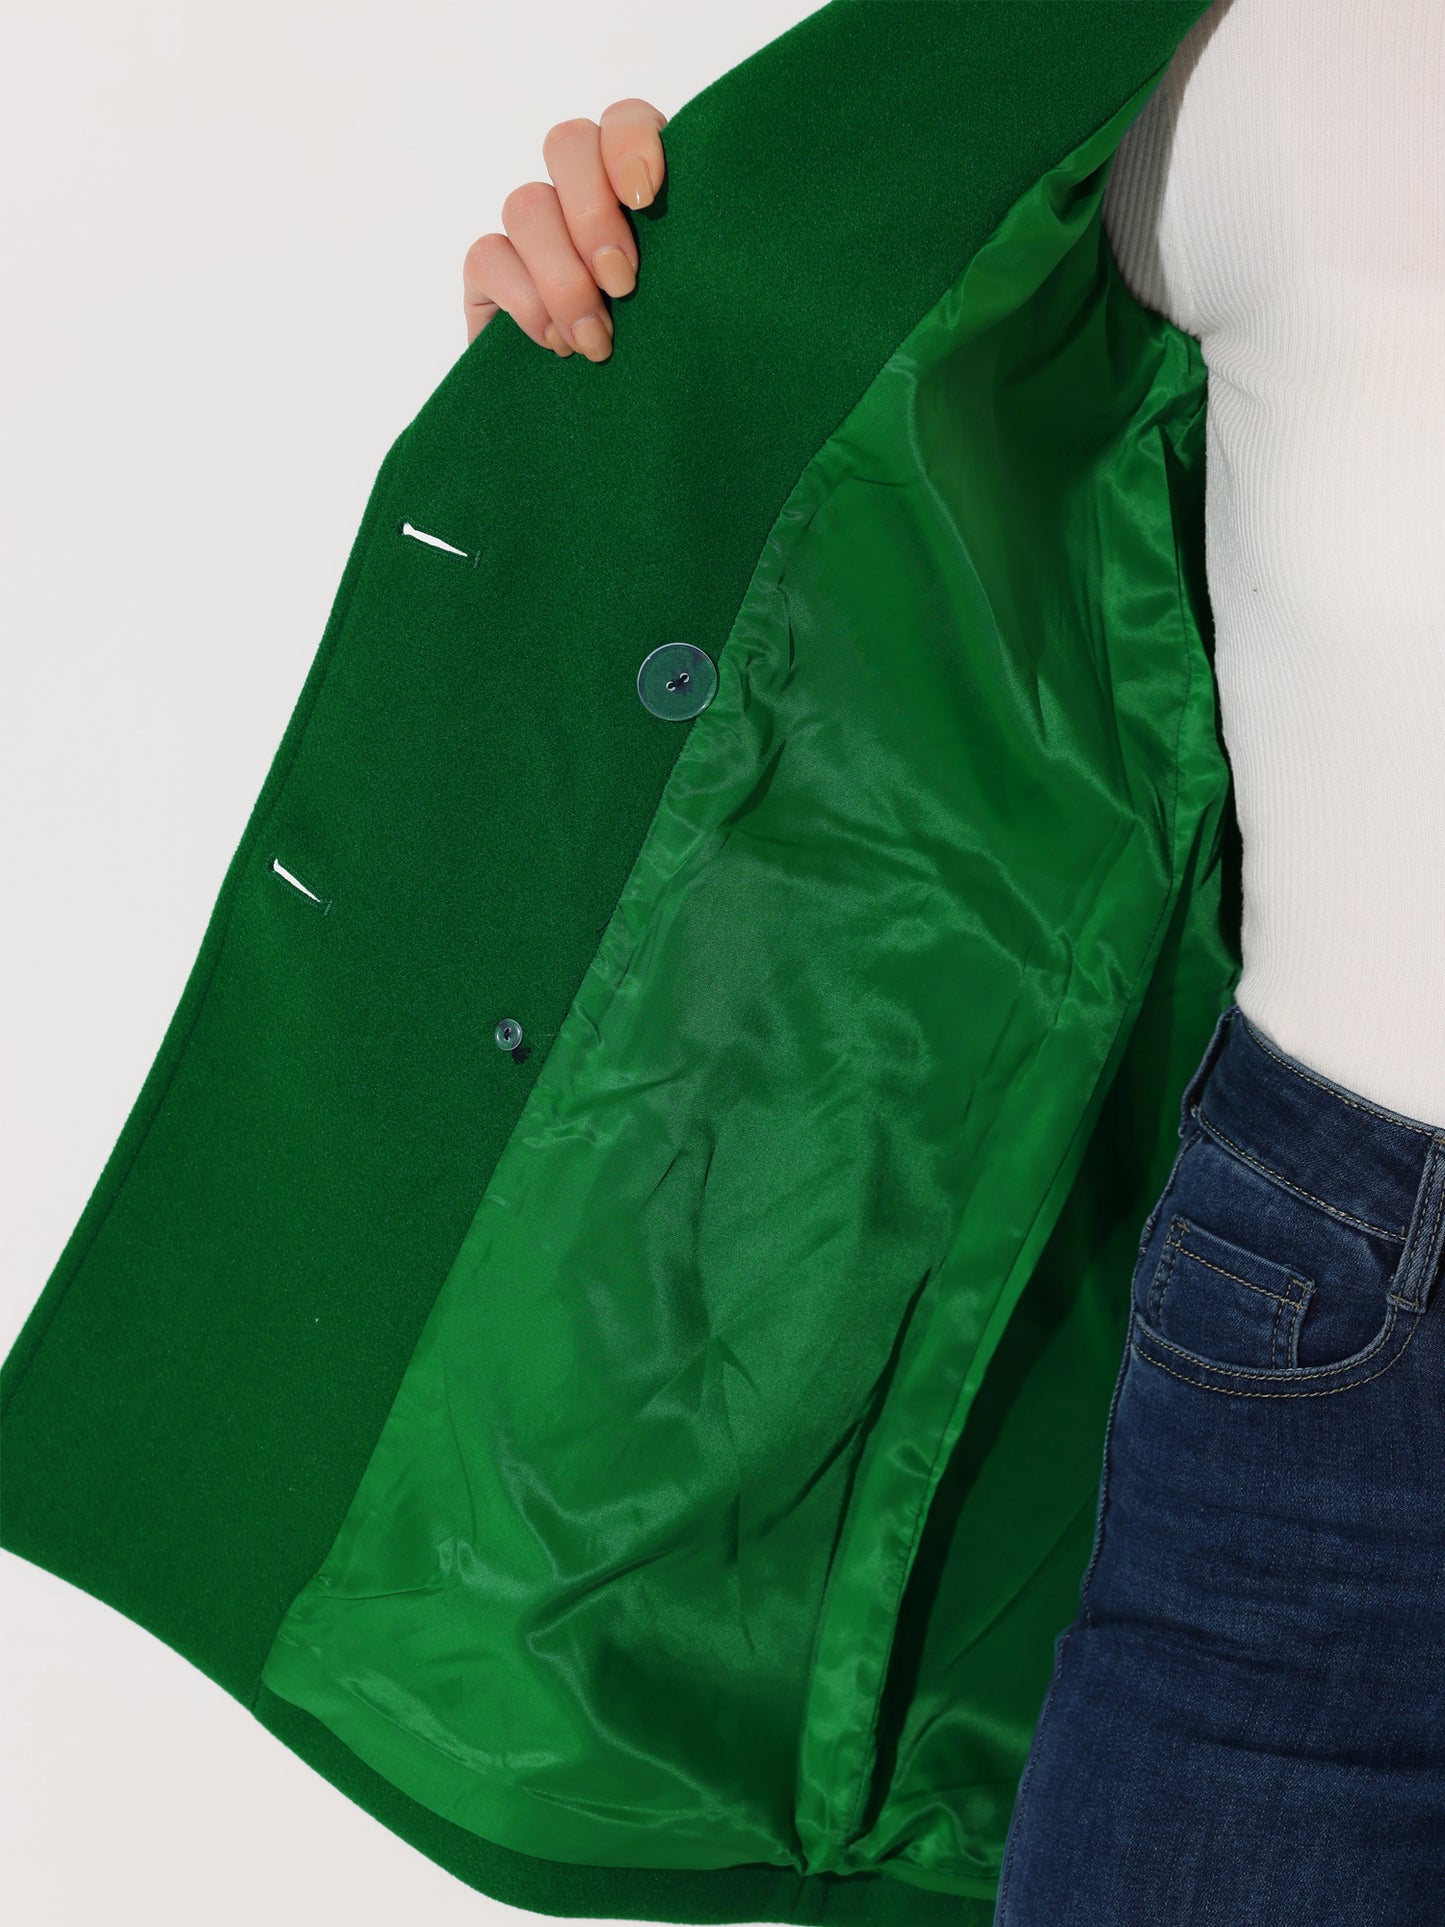 Allegra K Notch Lapel Double Breasted Belted Mid Long Outwear Winter Coat Dark Green